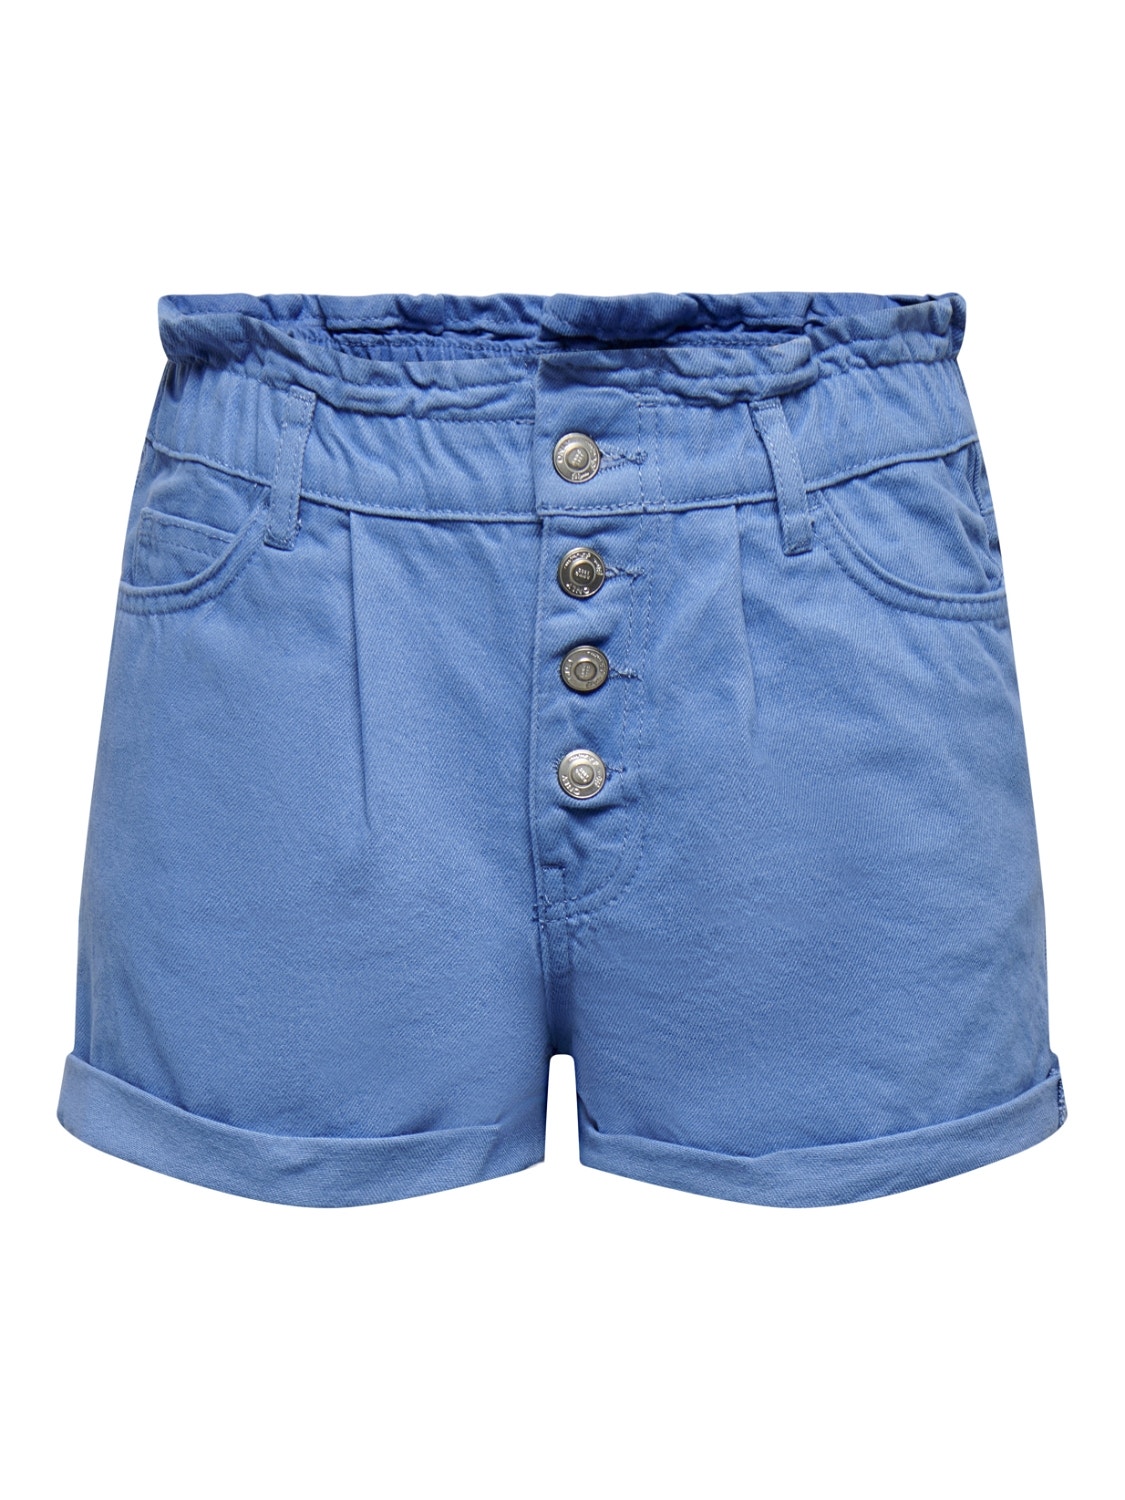 ONLY Relaxed Fit High waist Fold-up hems Shorts -Ultramarine - 15200196